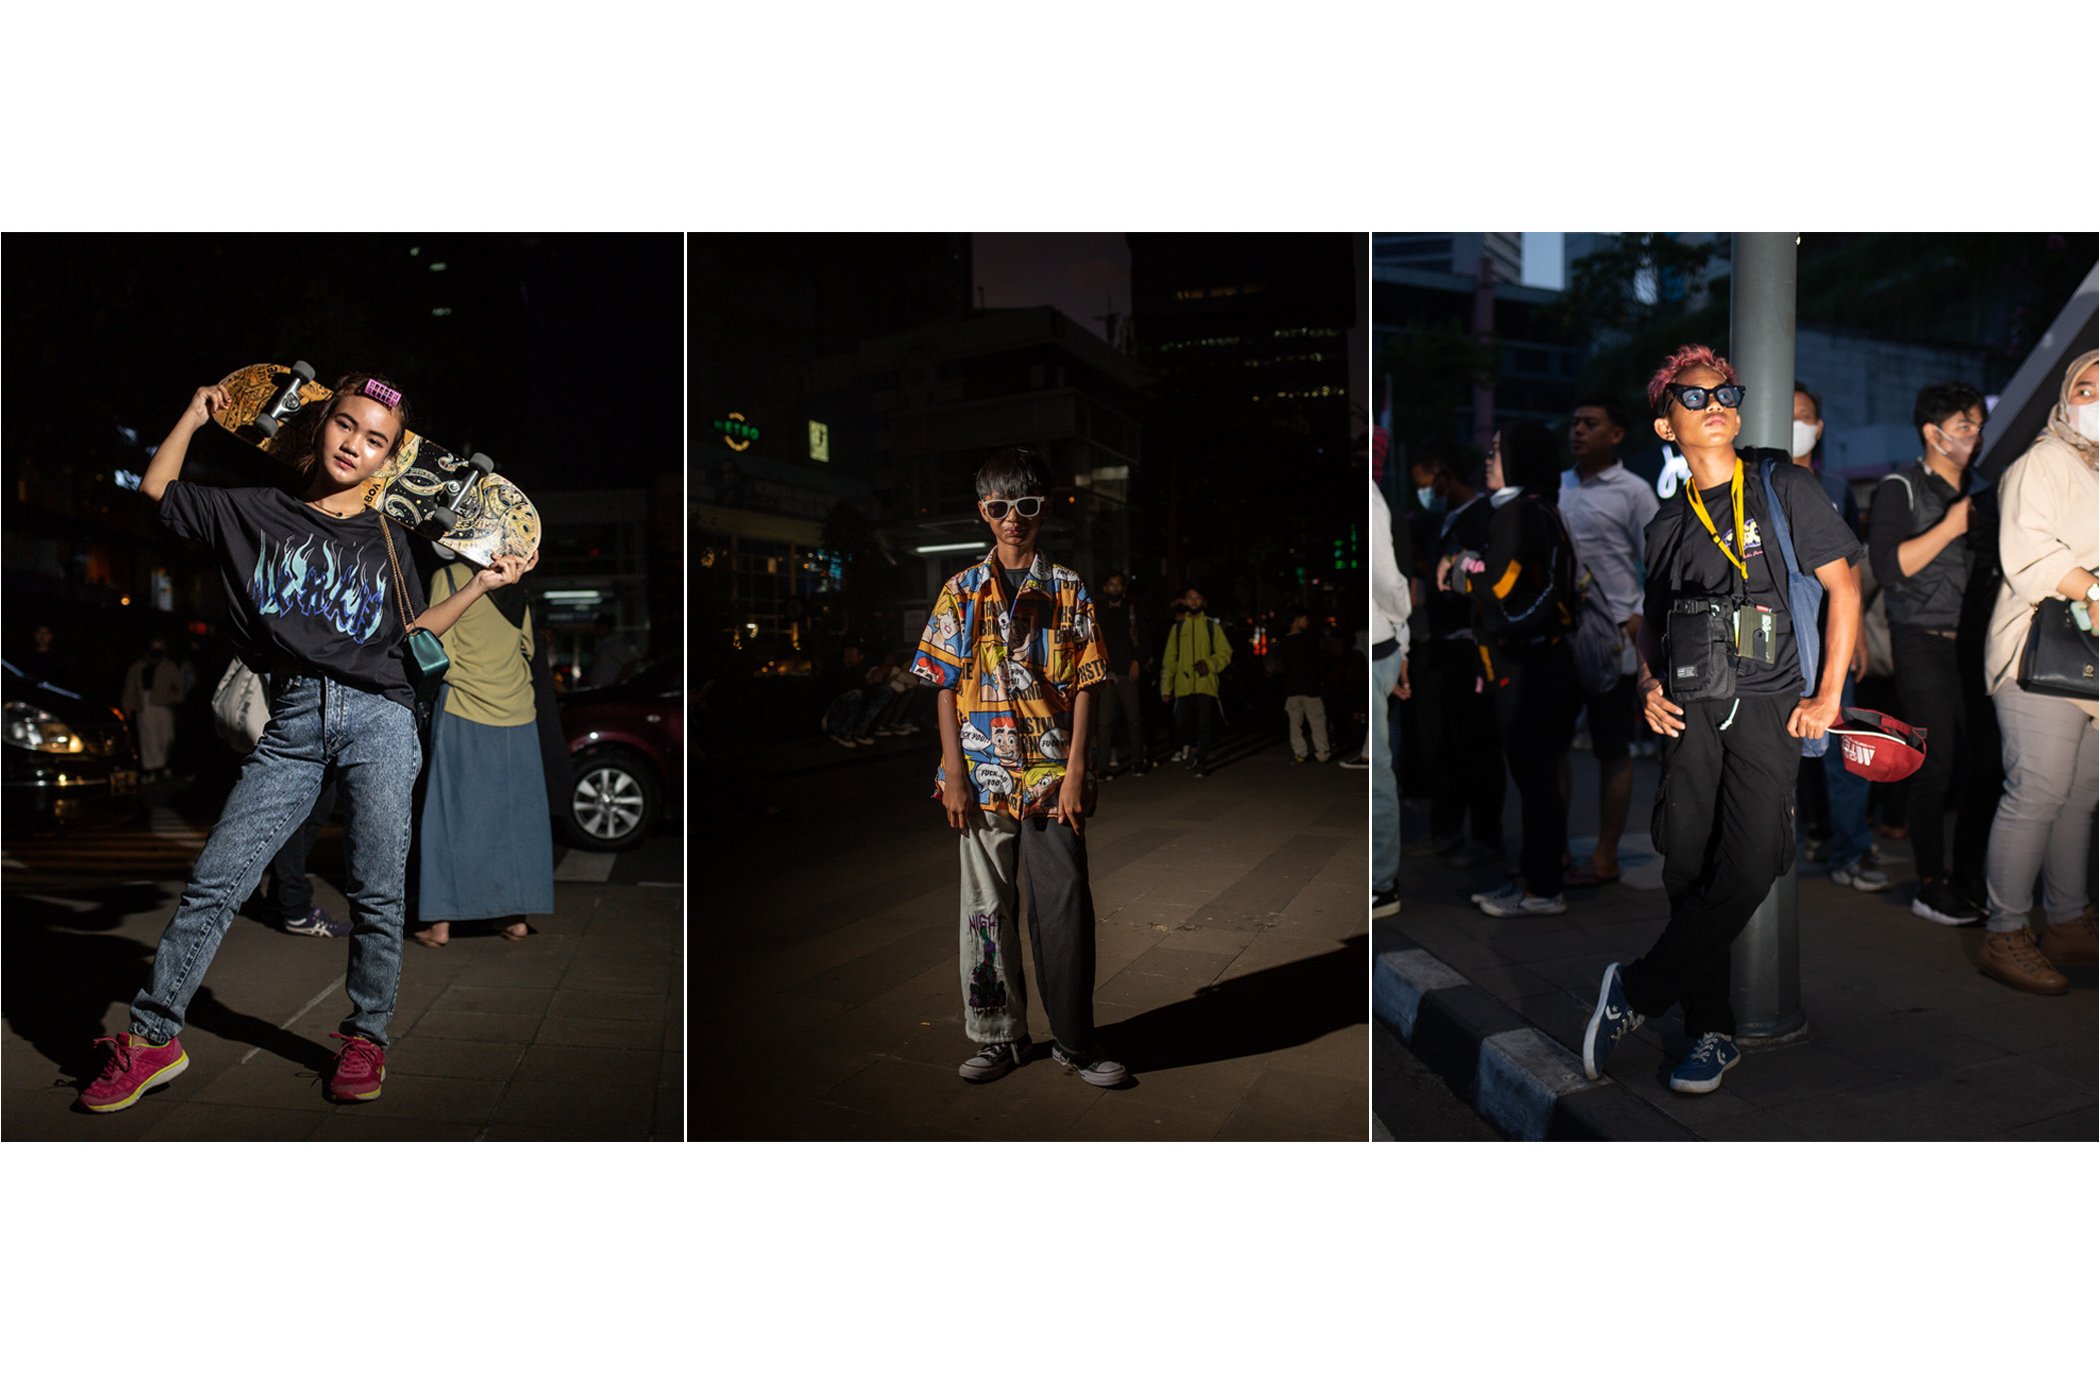 Kolase foto potrait anak-anak remaja dengan pakaian khasnya saat bermain di kawasan Dukuh Atas, Jakarta, Jumat (22/7).